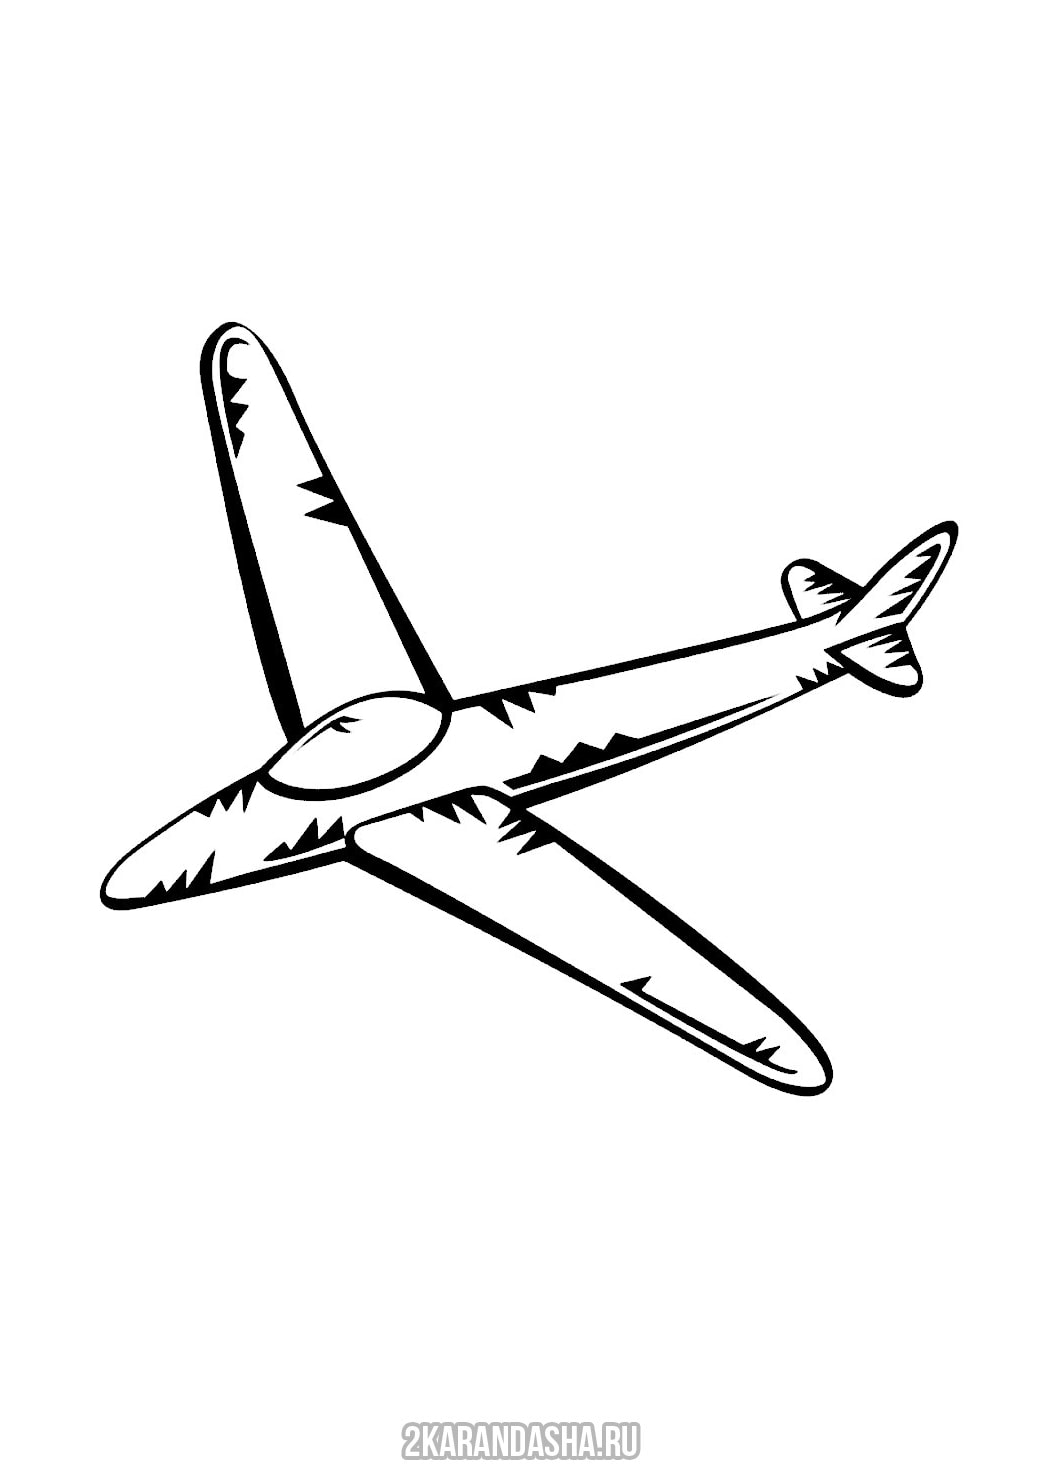 Покажи рисунки самолета. Самолеты. Раскраска. Самолет рисунок. Самолет картинка раскраска. Самолет рисунок для детей раскраска.